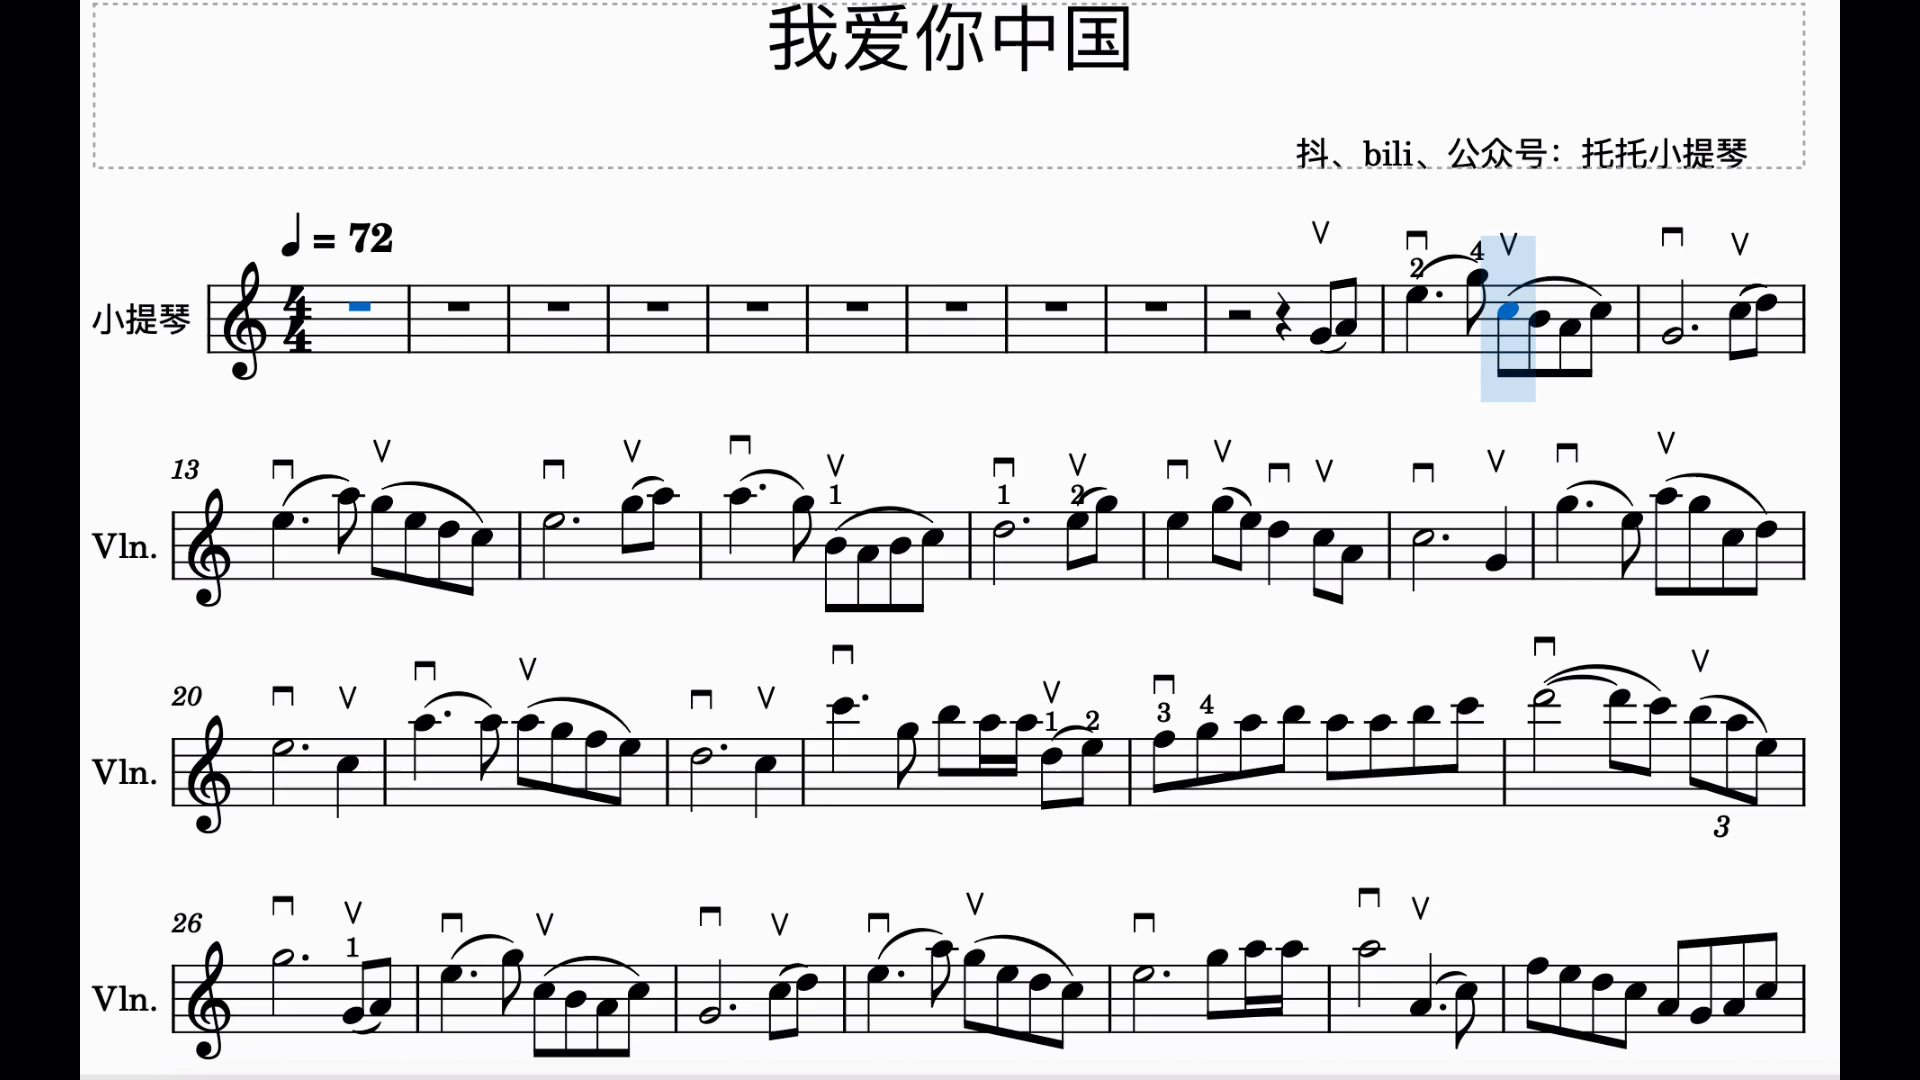 我爱你中国小提琴谱 指法 弓法 伴奏 托托小提琴自制